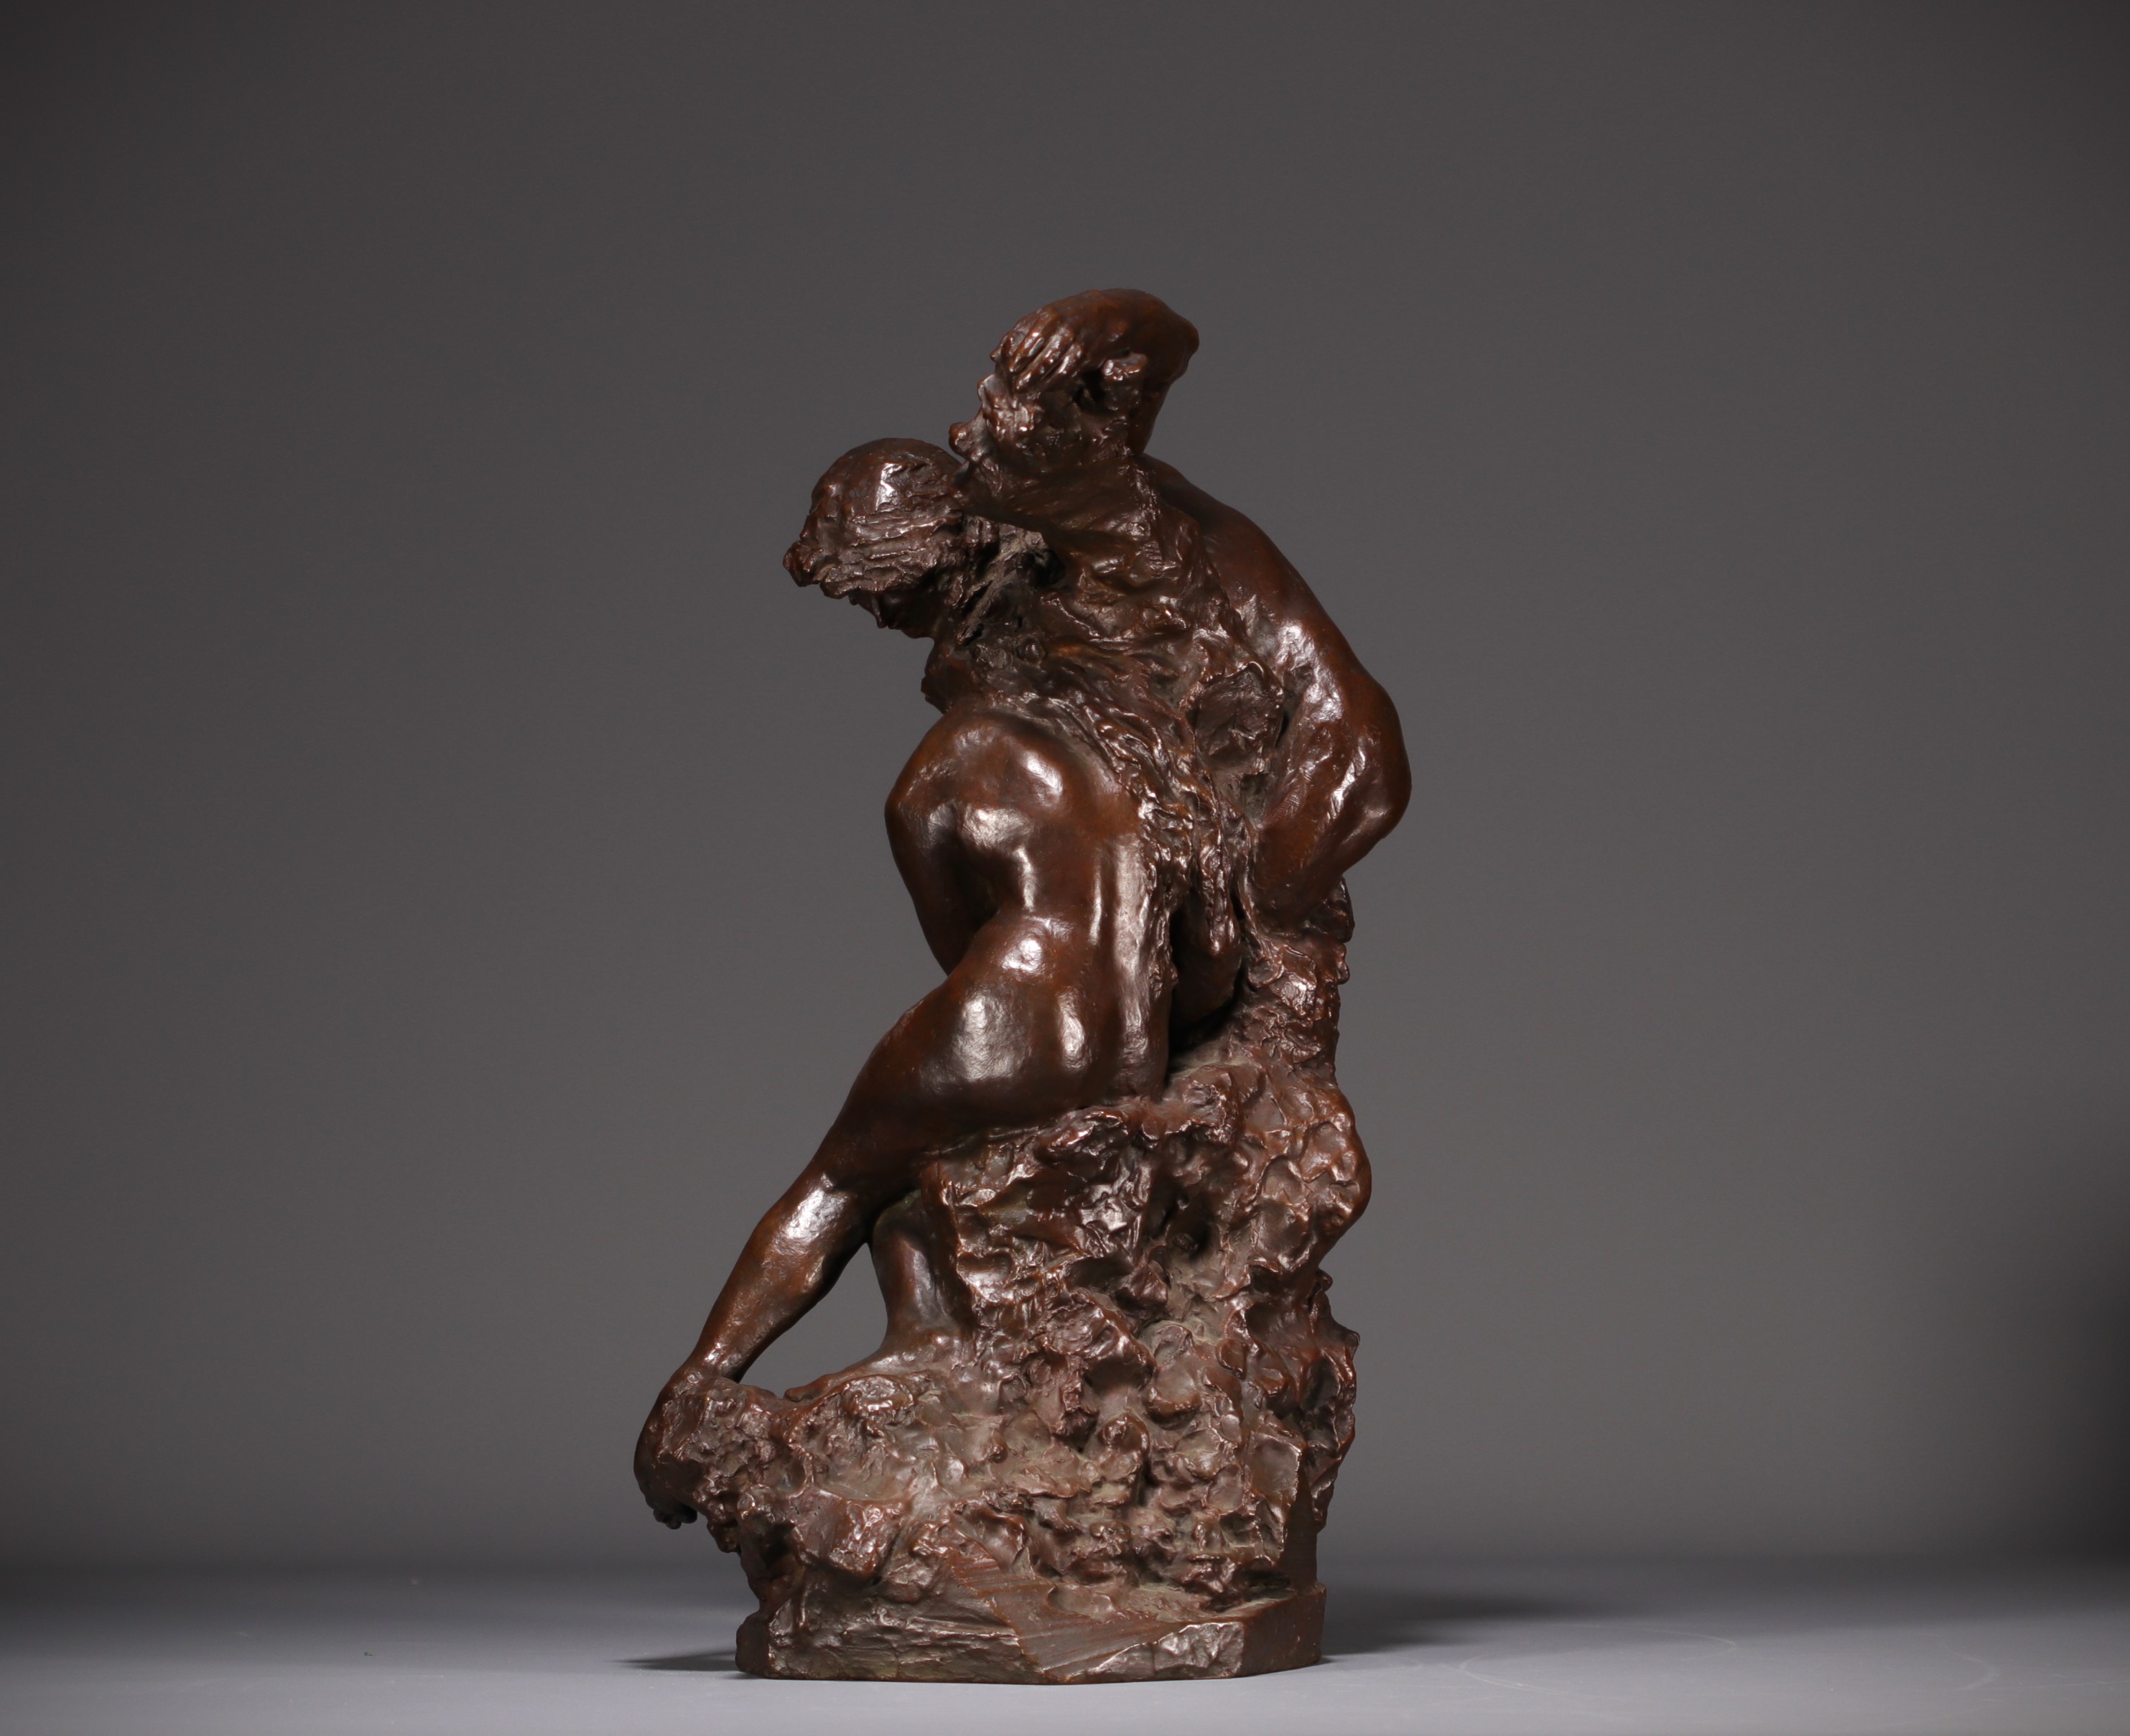 Jules DESBOIS (1851-1935) "L'Amour" Lost wax bronze, signed J. Desbois, nÂ°1, Stamp Hebrard foundry. - Image 3 of 7